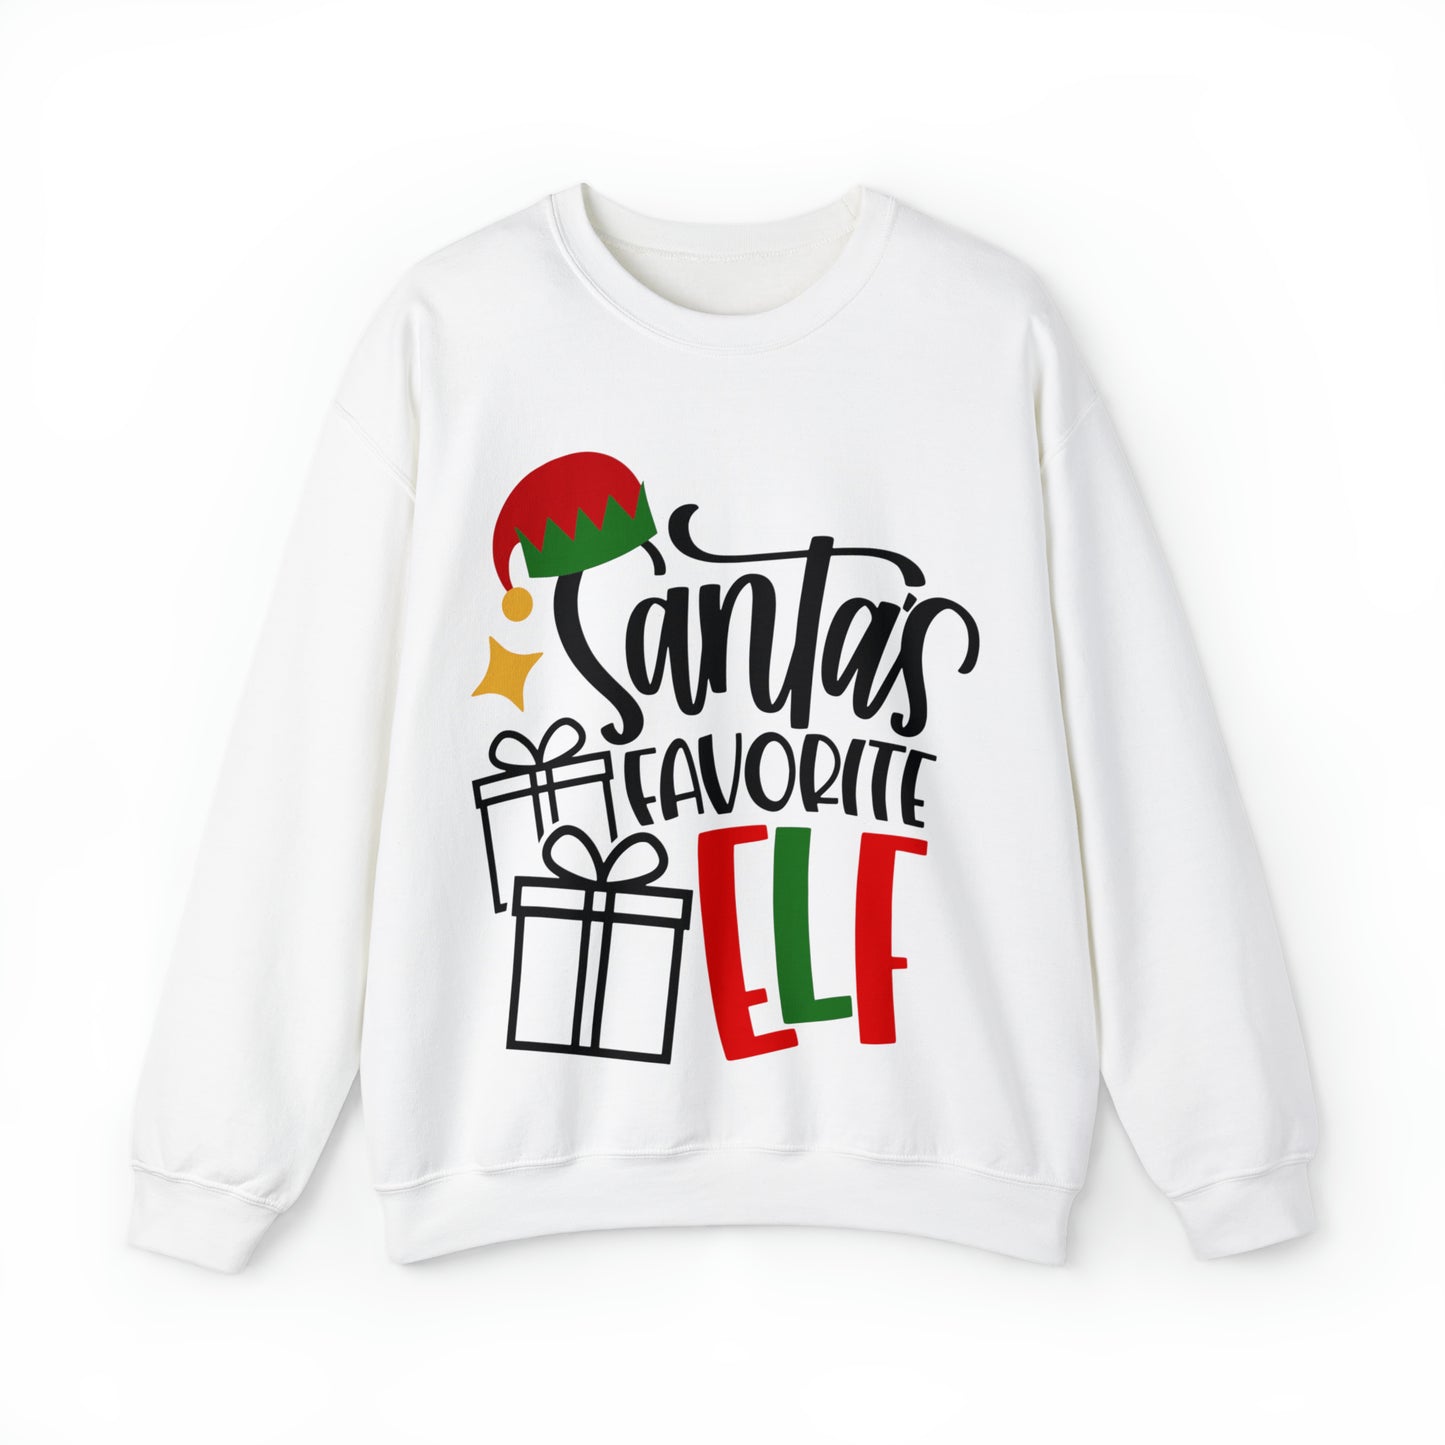 Santa's Favorite Elf Crewneck Sweatshirt, Funny Sweatshirt, Elf Christmas Shirt, Cute Sweatshirt, Christmas Slogan Shirts, Christmas Sweater